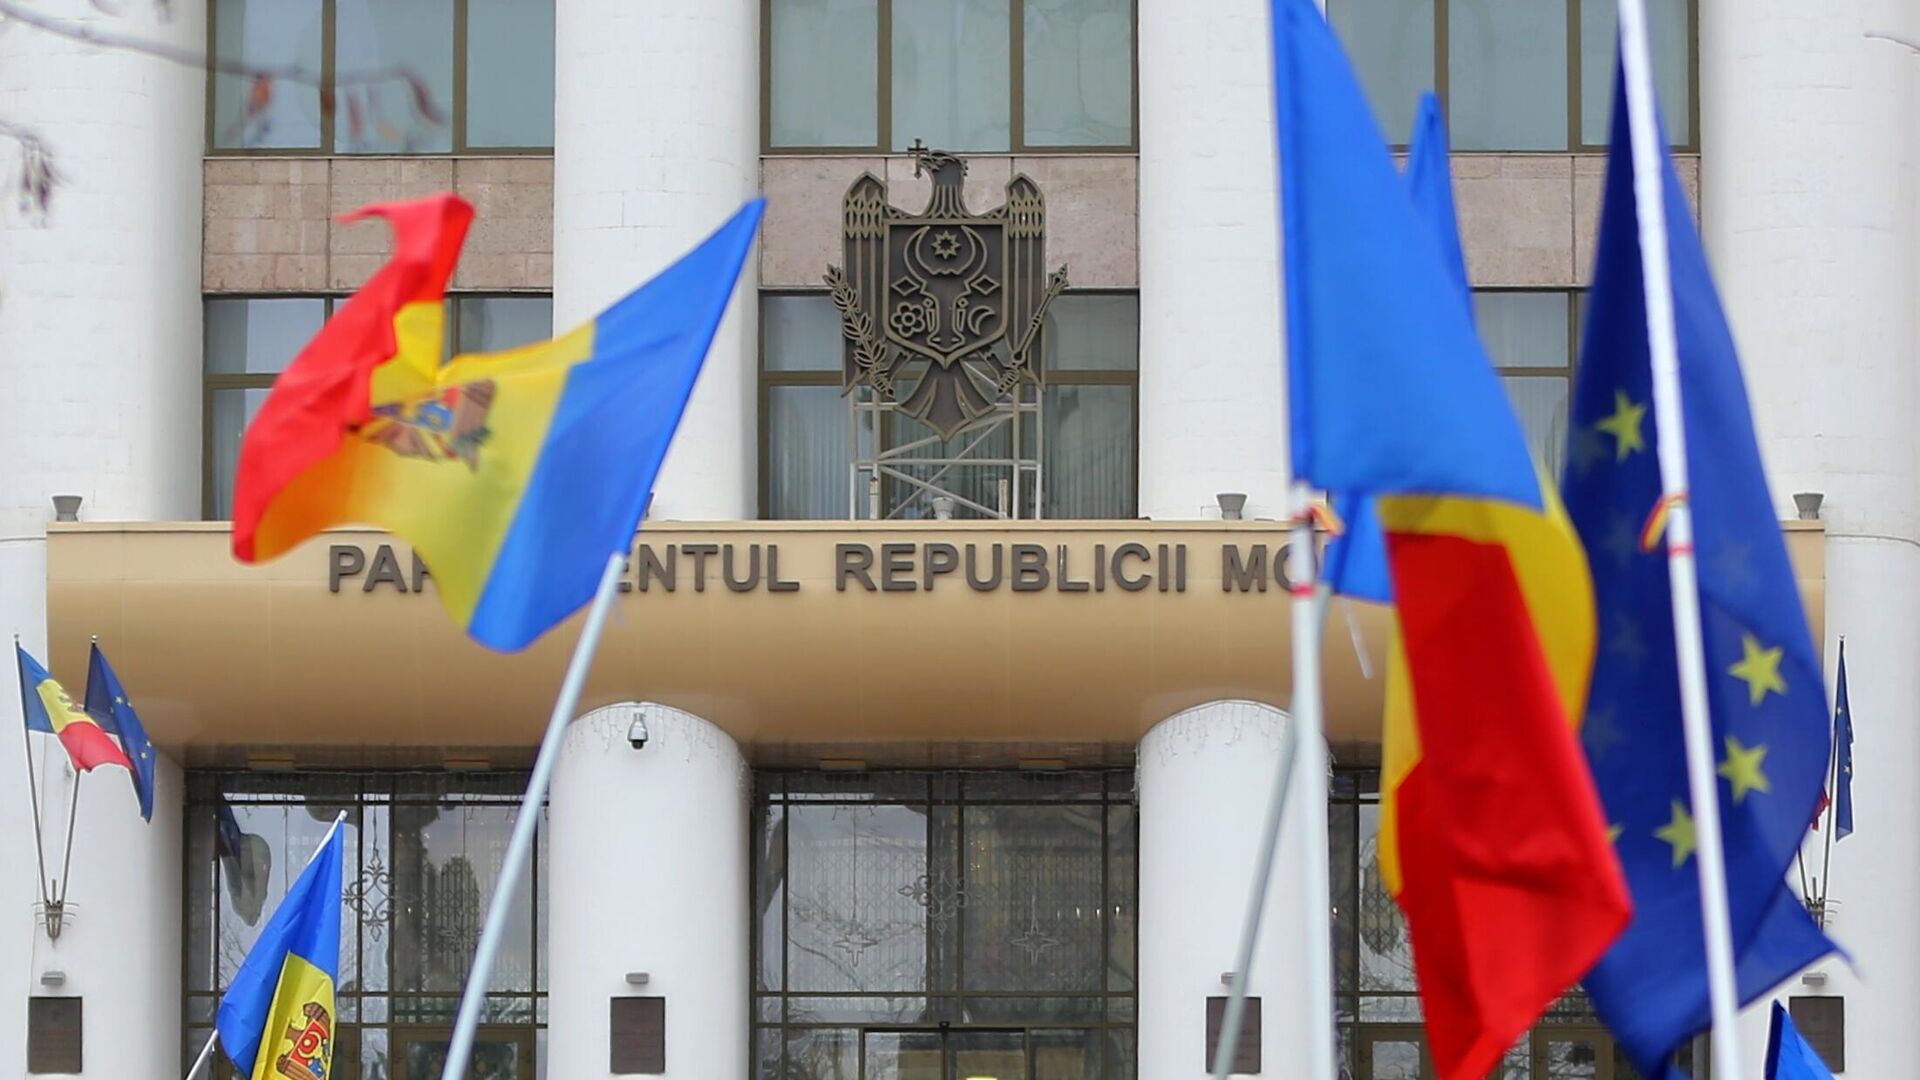 Молдавия теряет налогоплательщиков и бизнес, заявила оппозиция